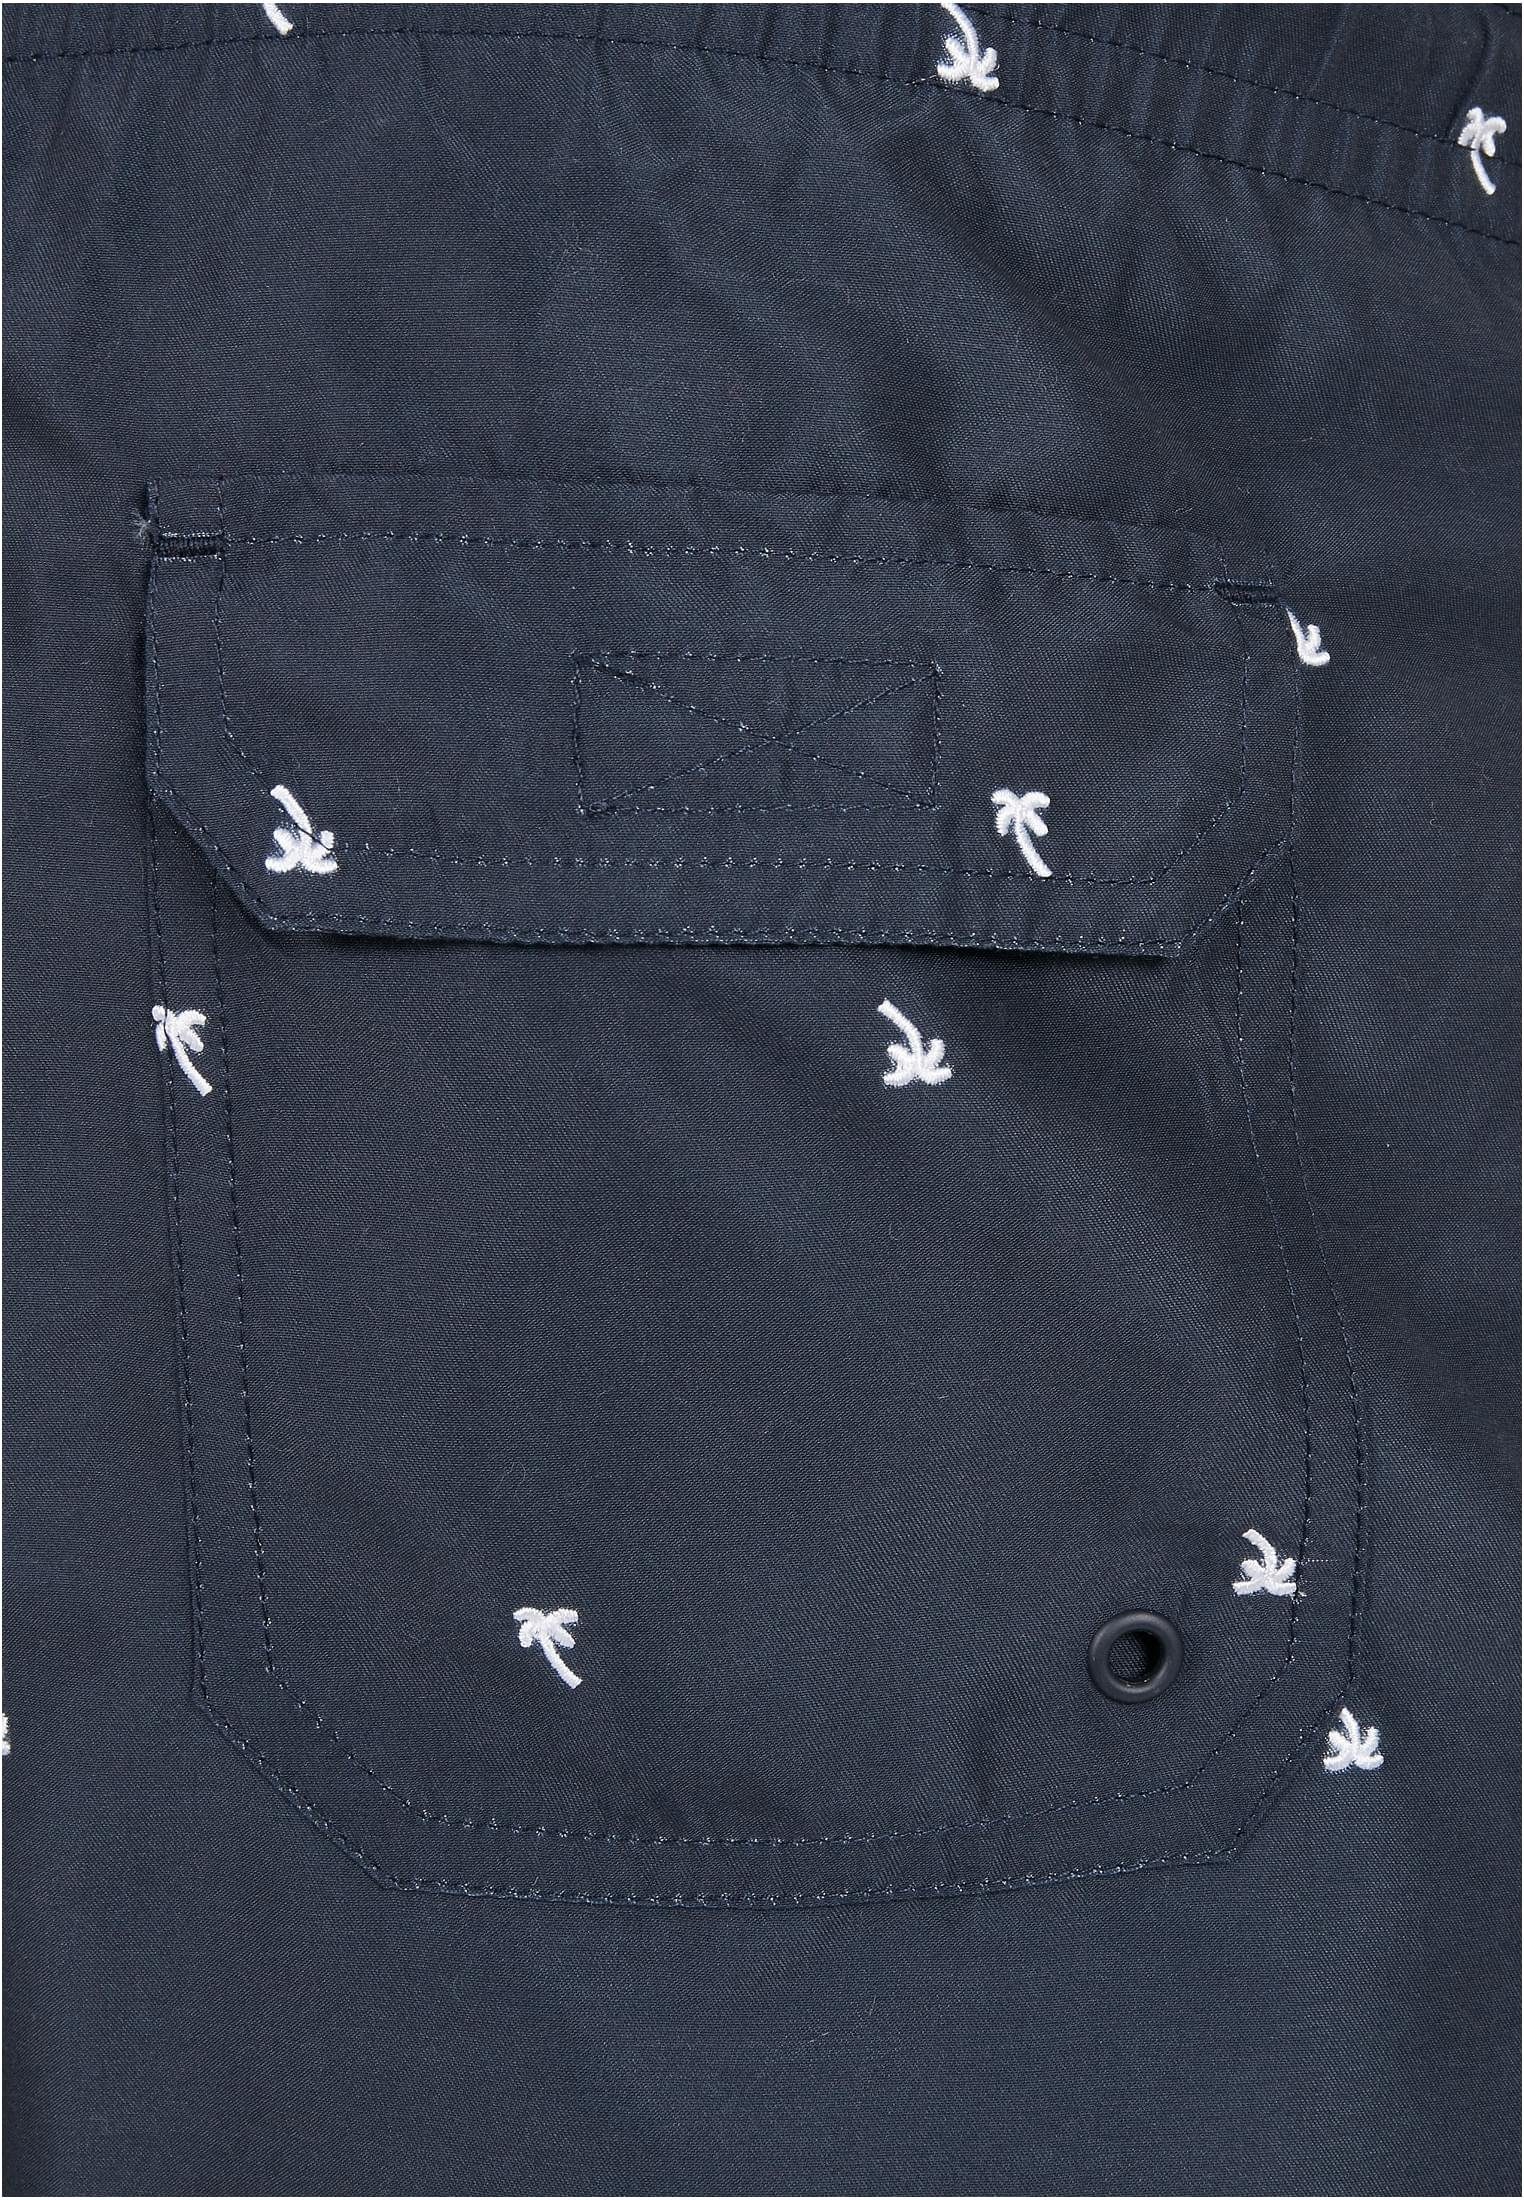 CLASSICS Embroidery Herren Swim Shorts Badeshorts URBAN palmtree/midnighnavy/white